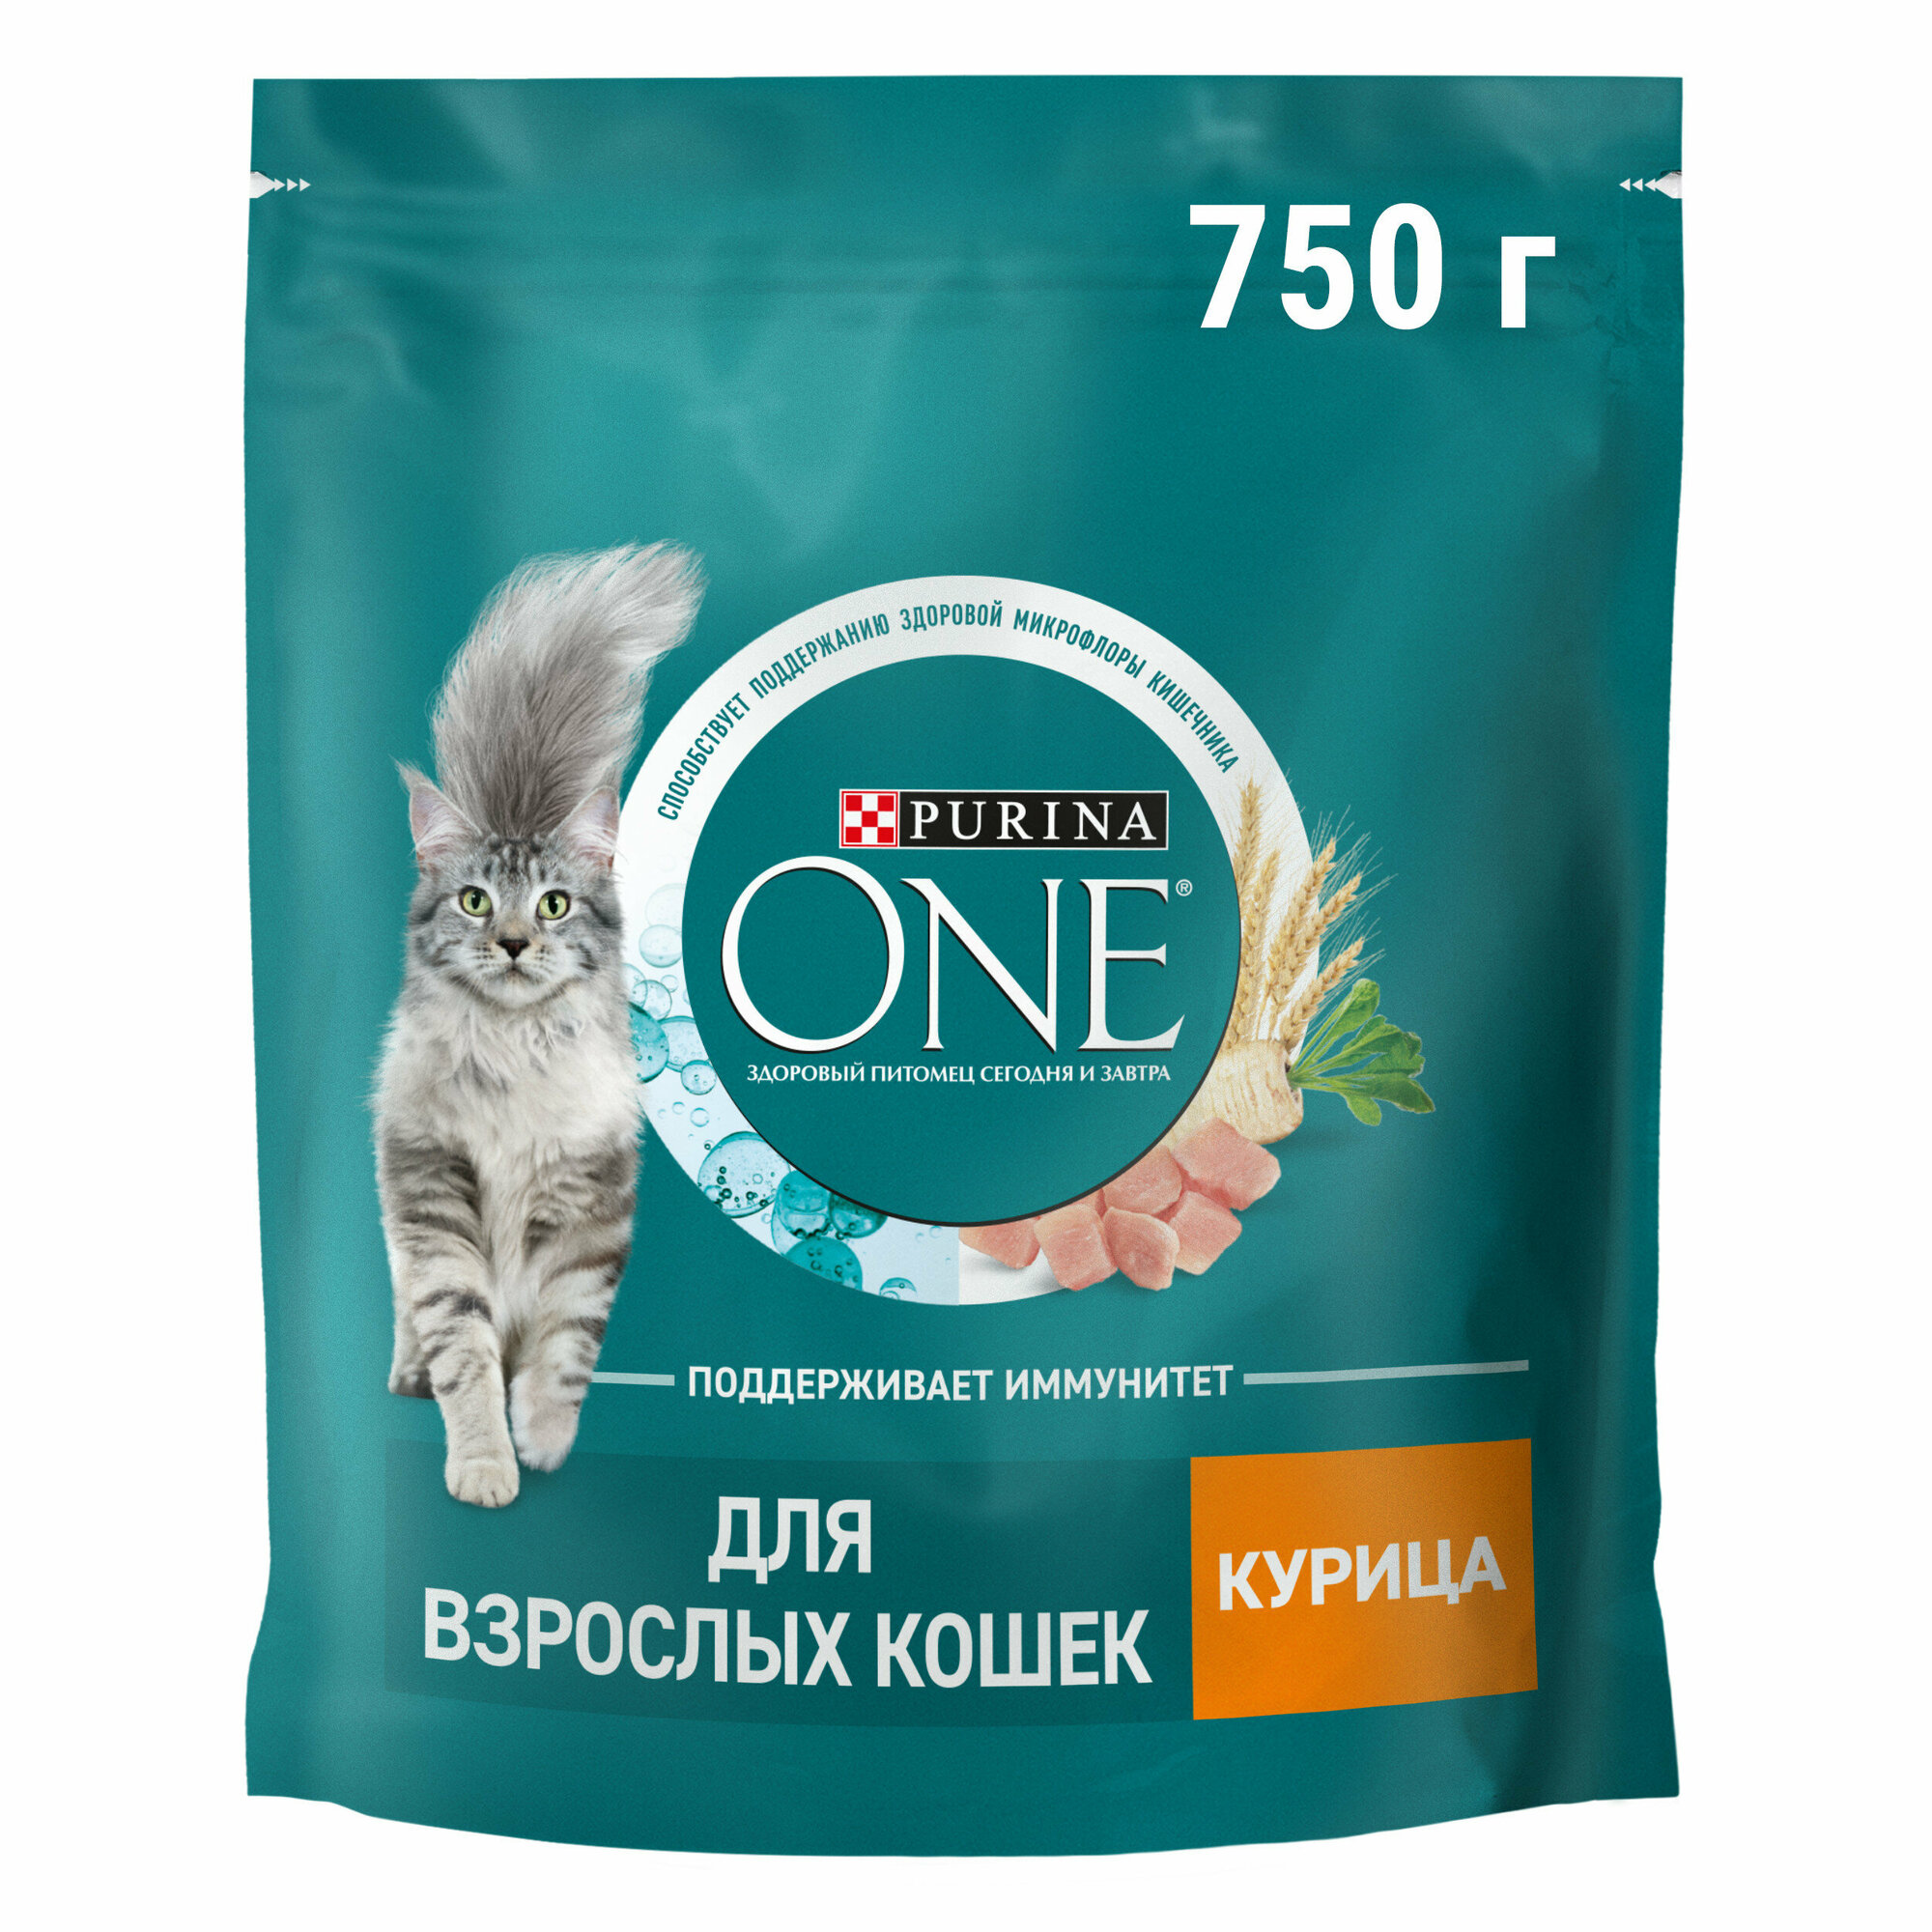 Сухой корм Purina ONE® полнорационный для взрослых кошек, с высоким содержанием курицы, 750 г